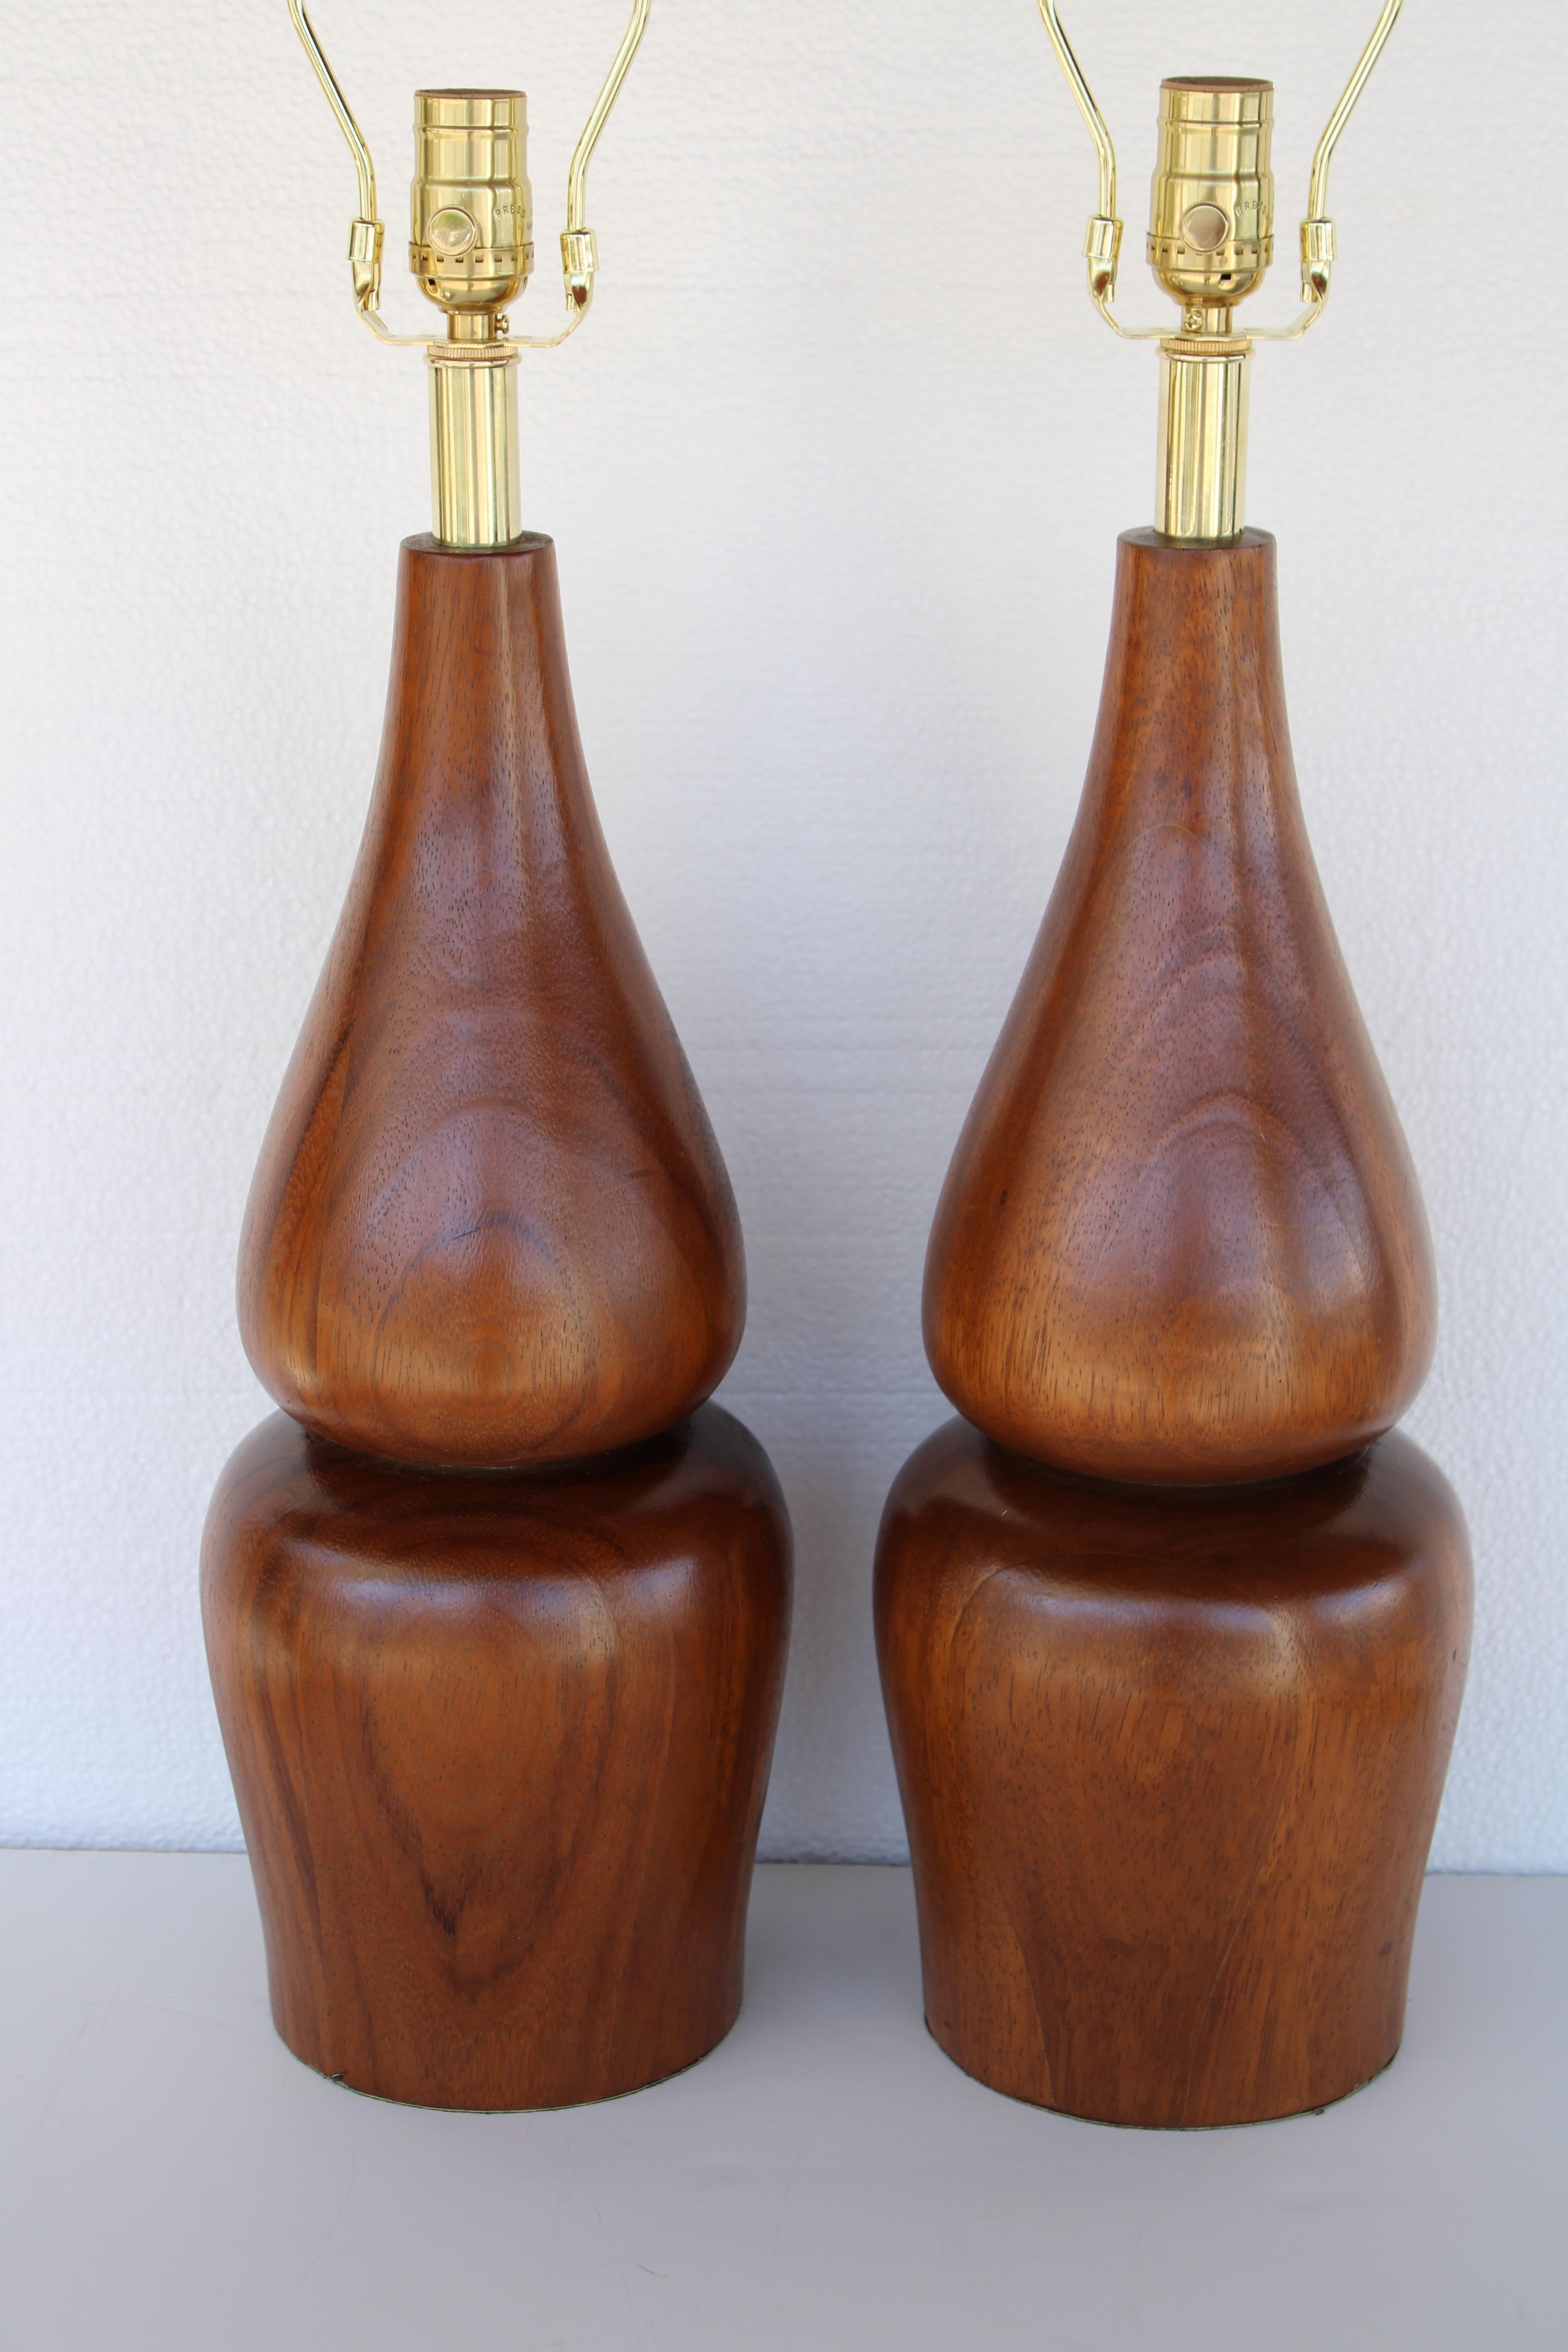 Pair of turned circular wood lamps.  Each lamp measures 21